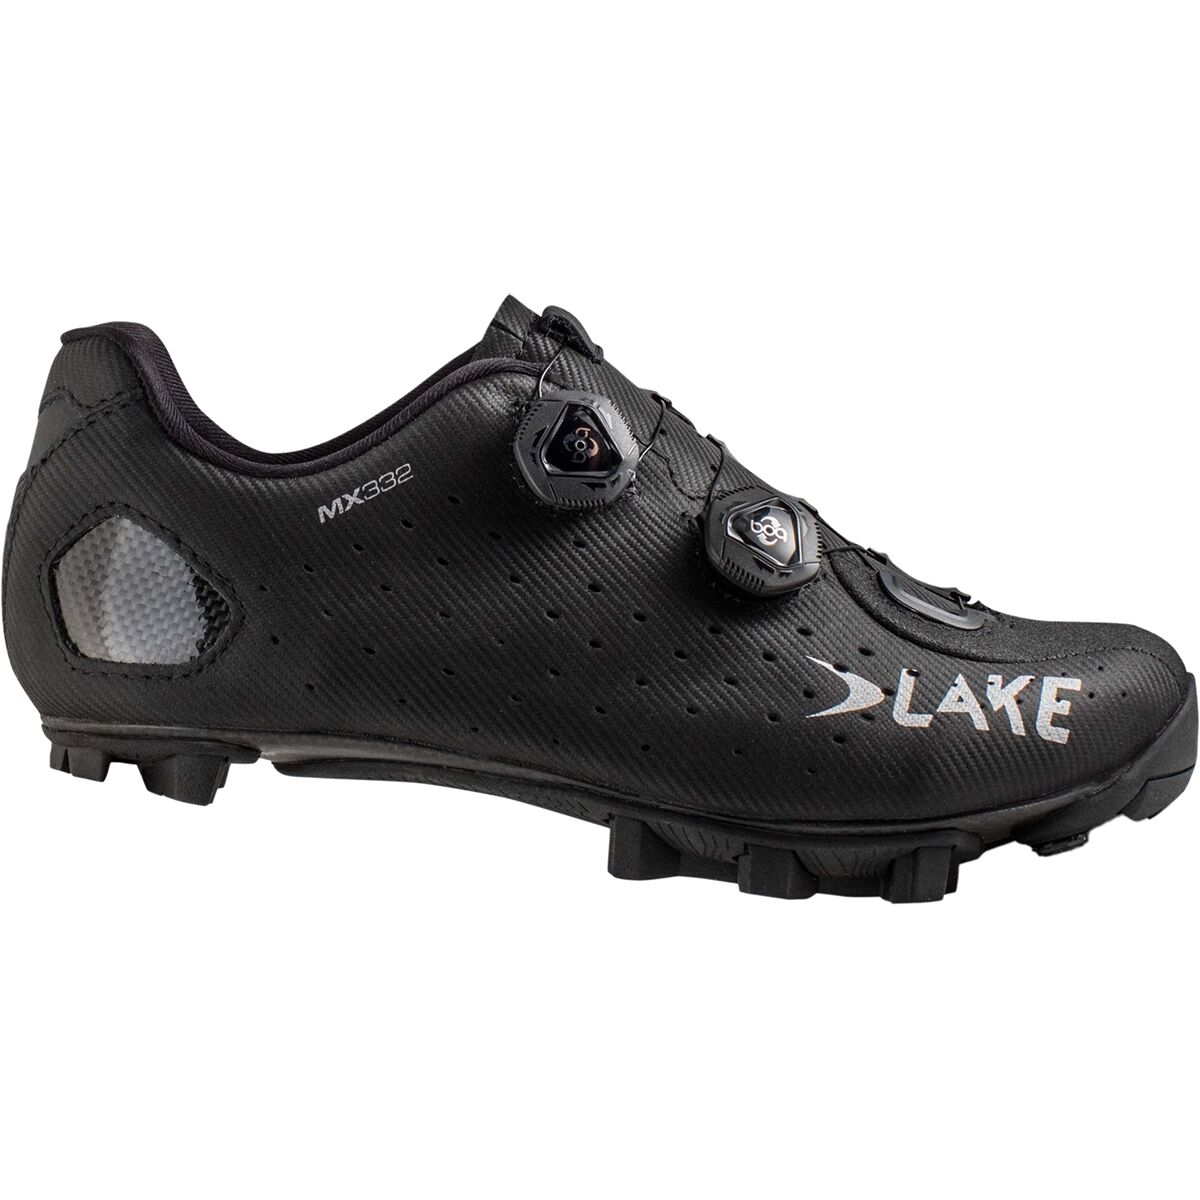 Lake MX332 Mountain Bike Shoe - Men's Black/Silver 39.0